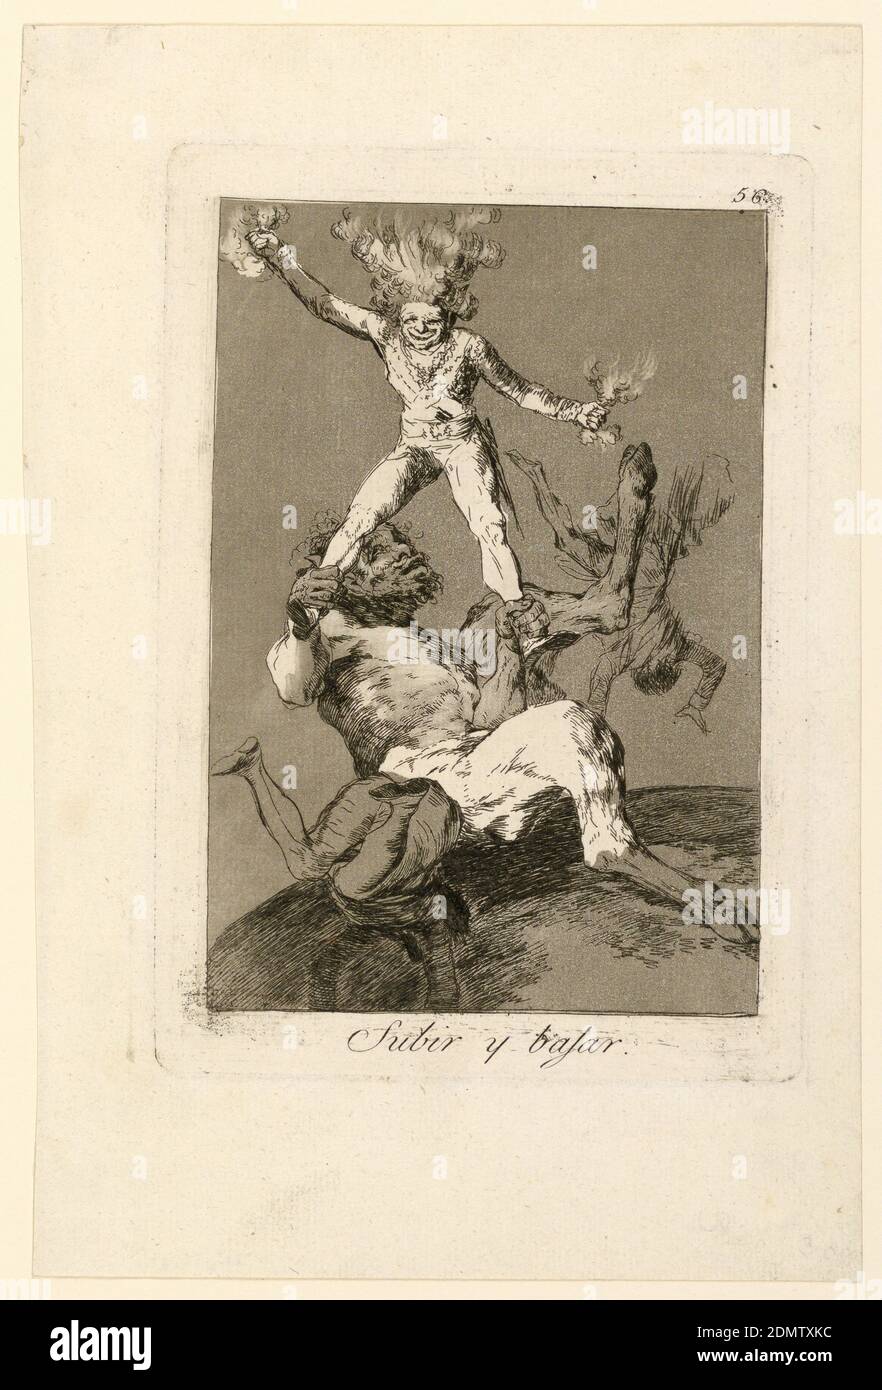 Subir y Bajar (Up and Down), Francisco de Goya y Lucientes, Spanisch, 1746 - 1828, Radierung und Aquatinta auf Papier, 1803, Abbildungen, Druck Stockfoto